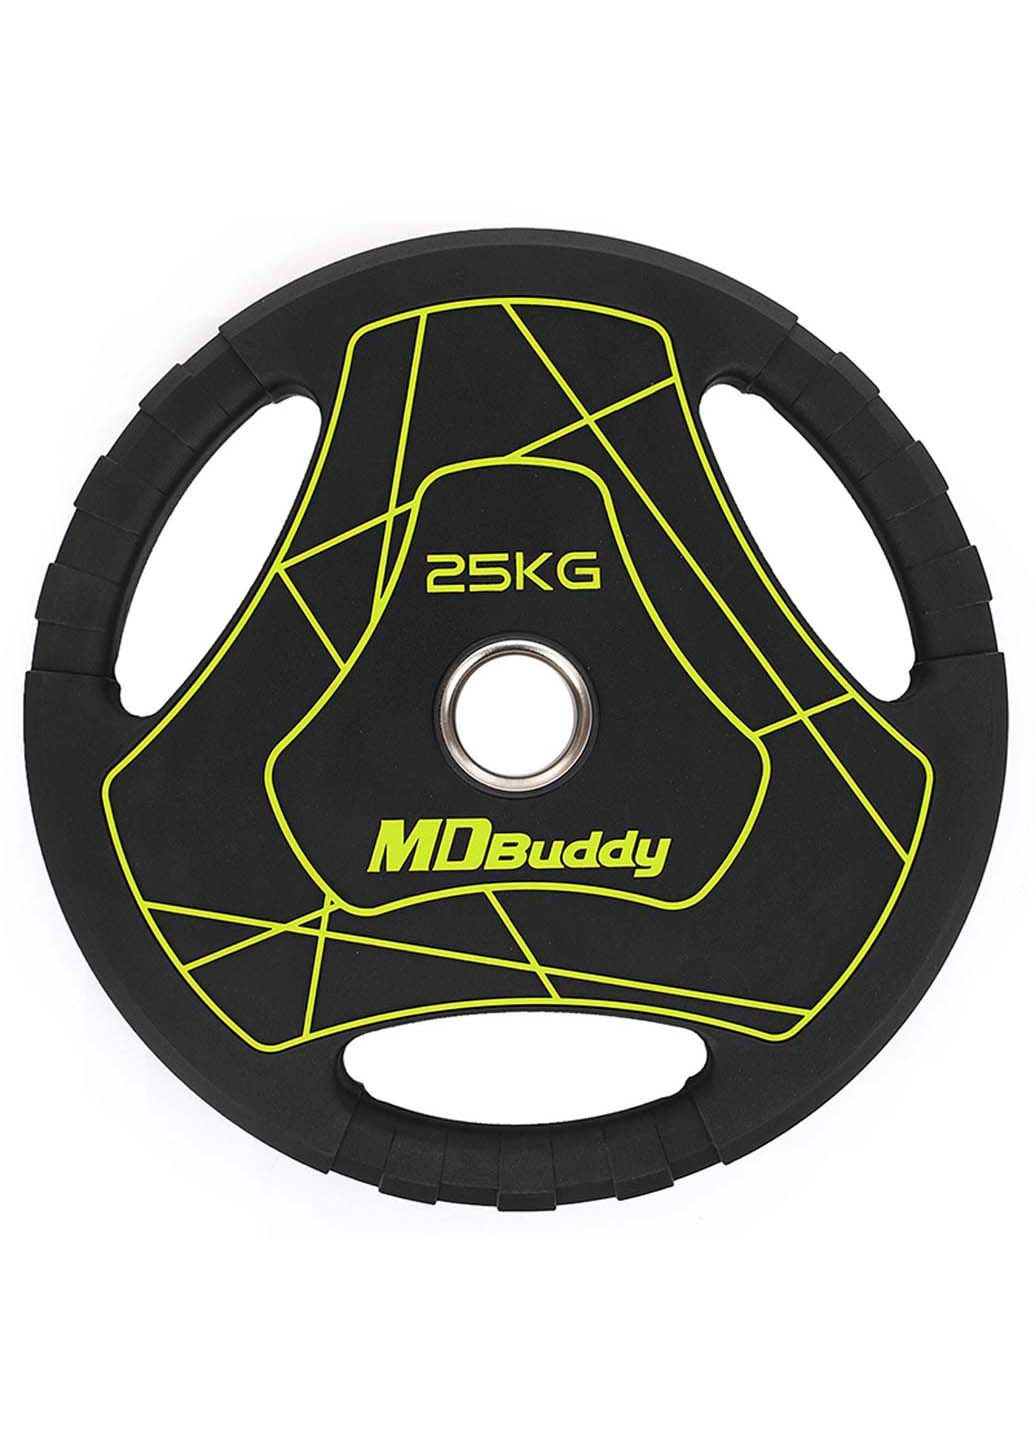 Млинці диски TA-9647 25 кг MDbuddy (286043774)